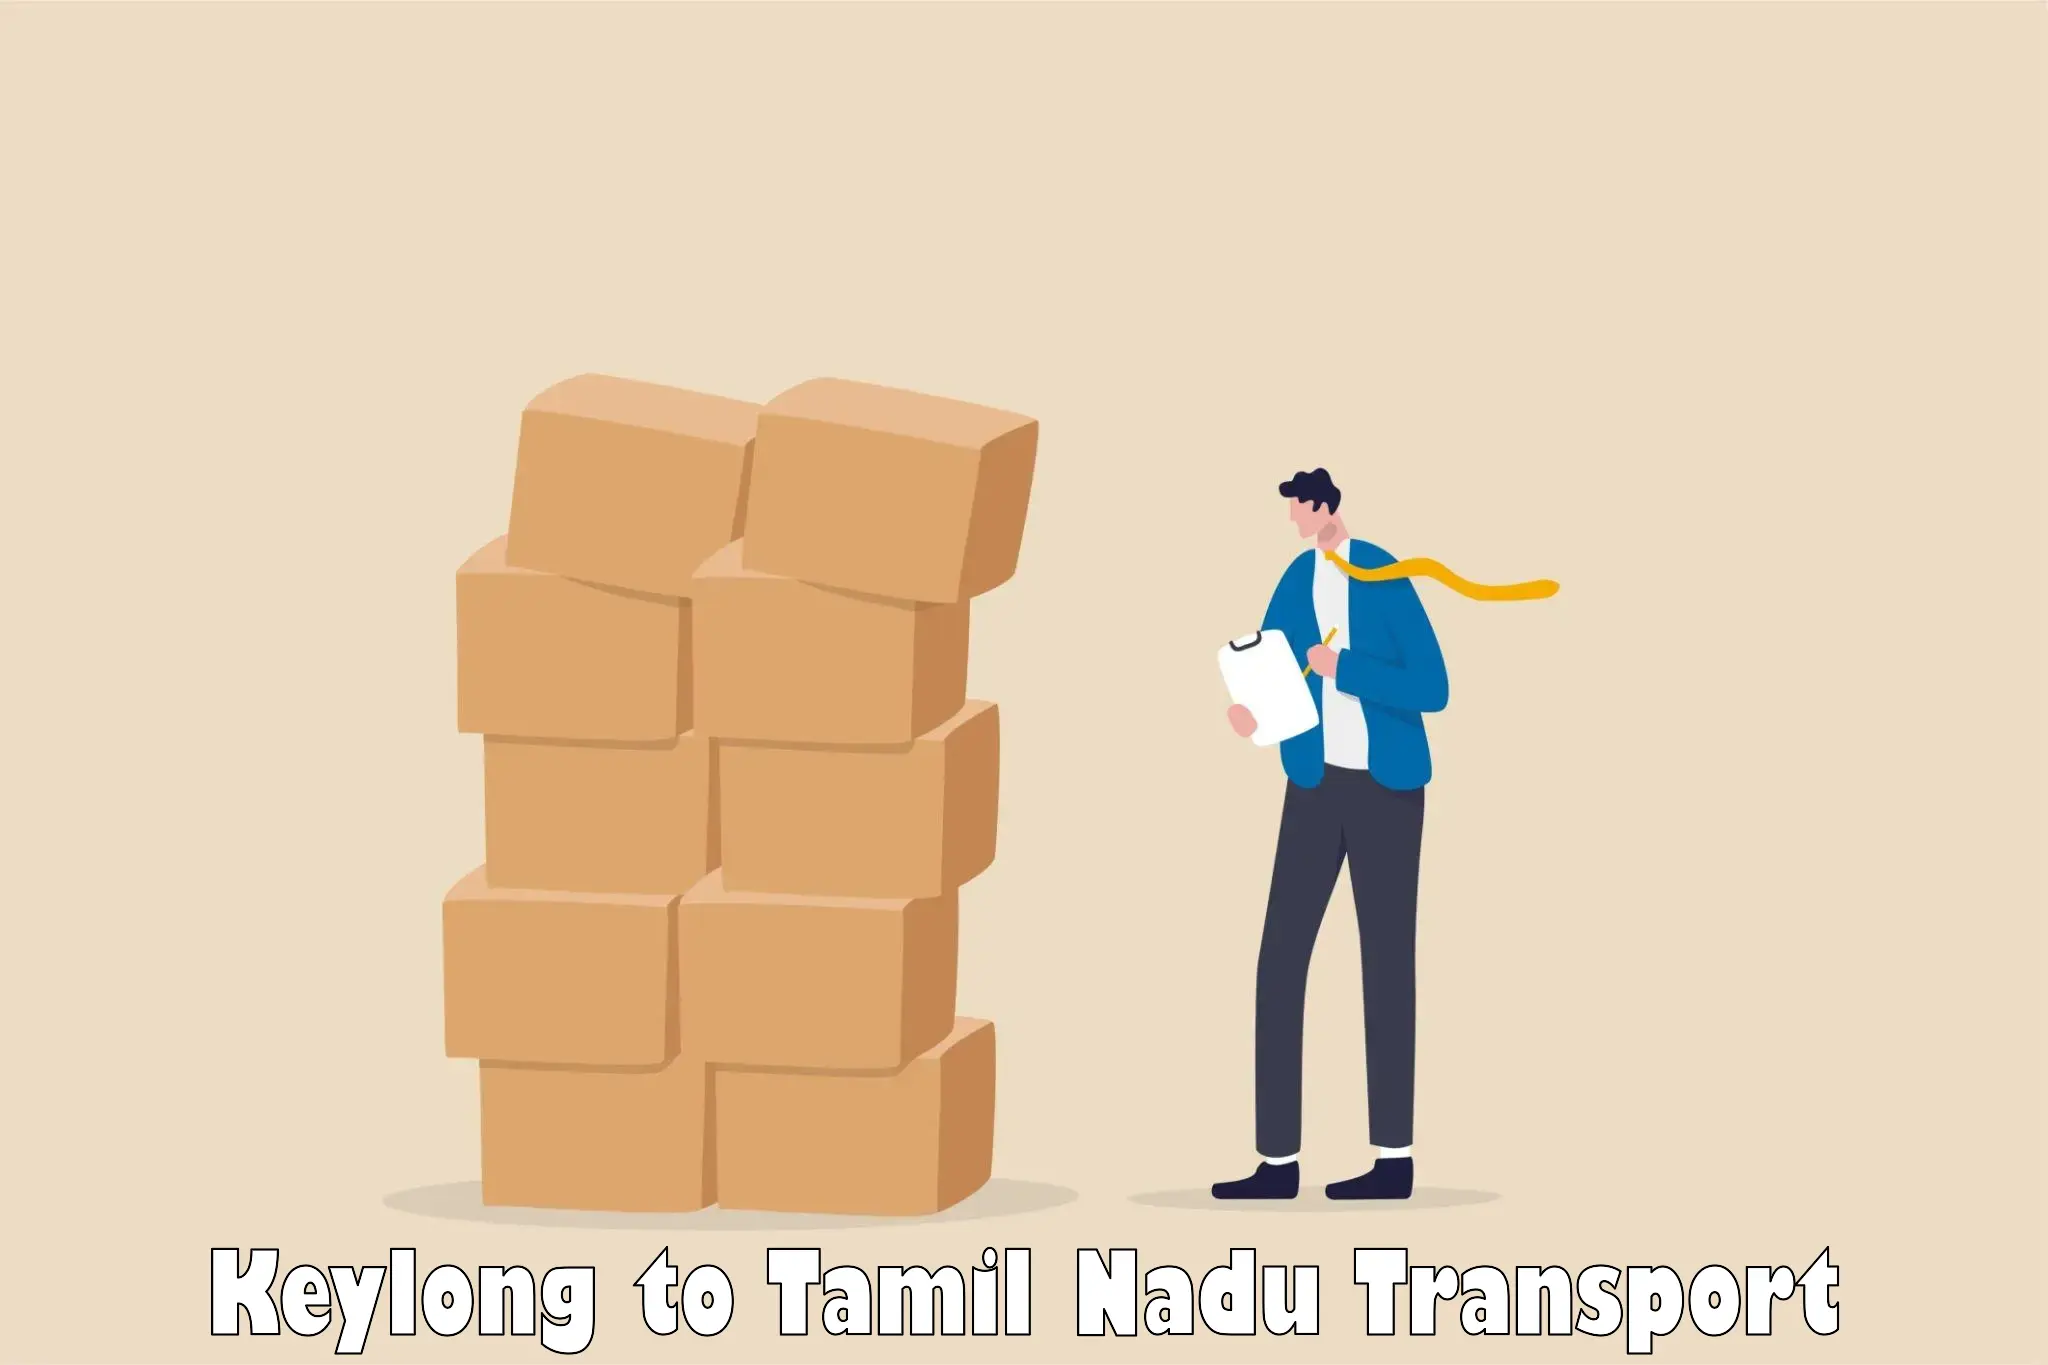 Daily transport service Keylong to Tiruturaipundi